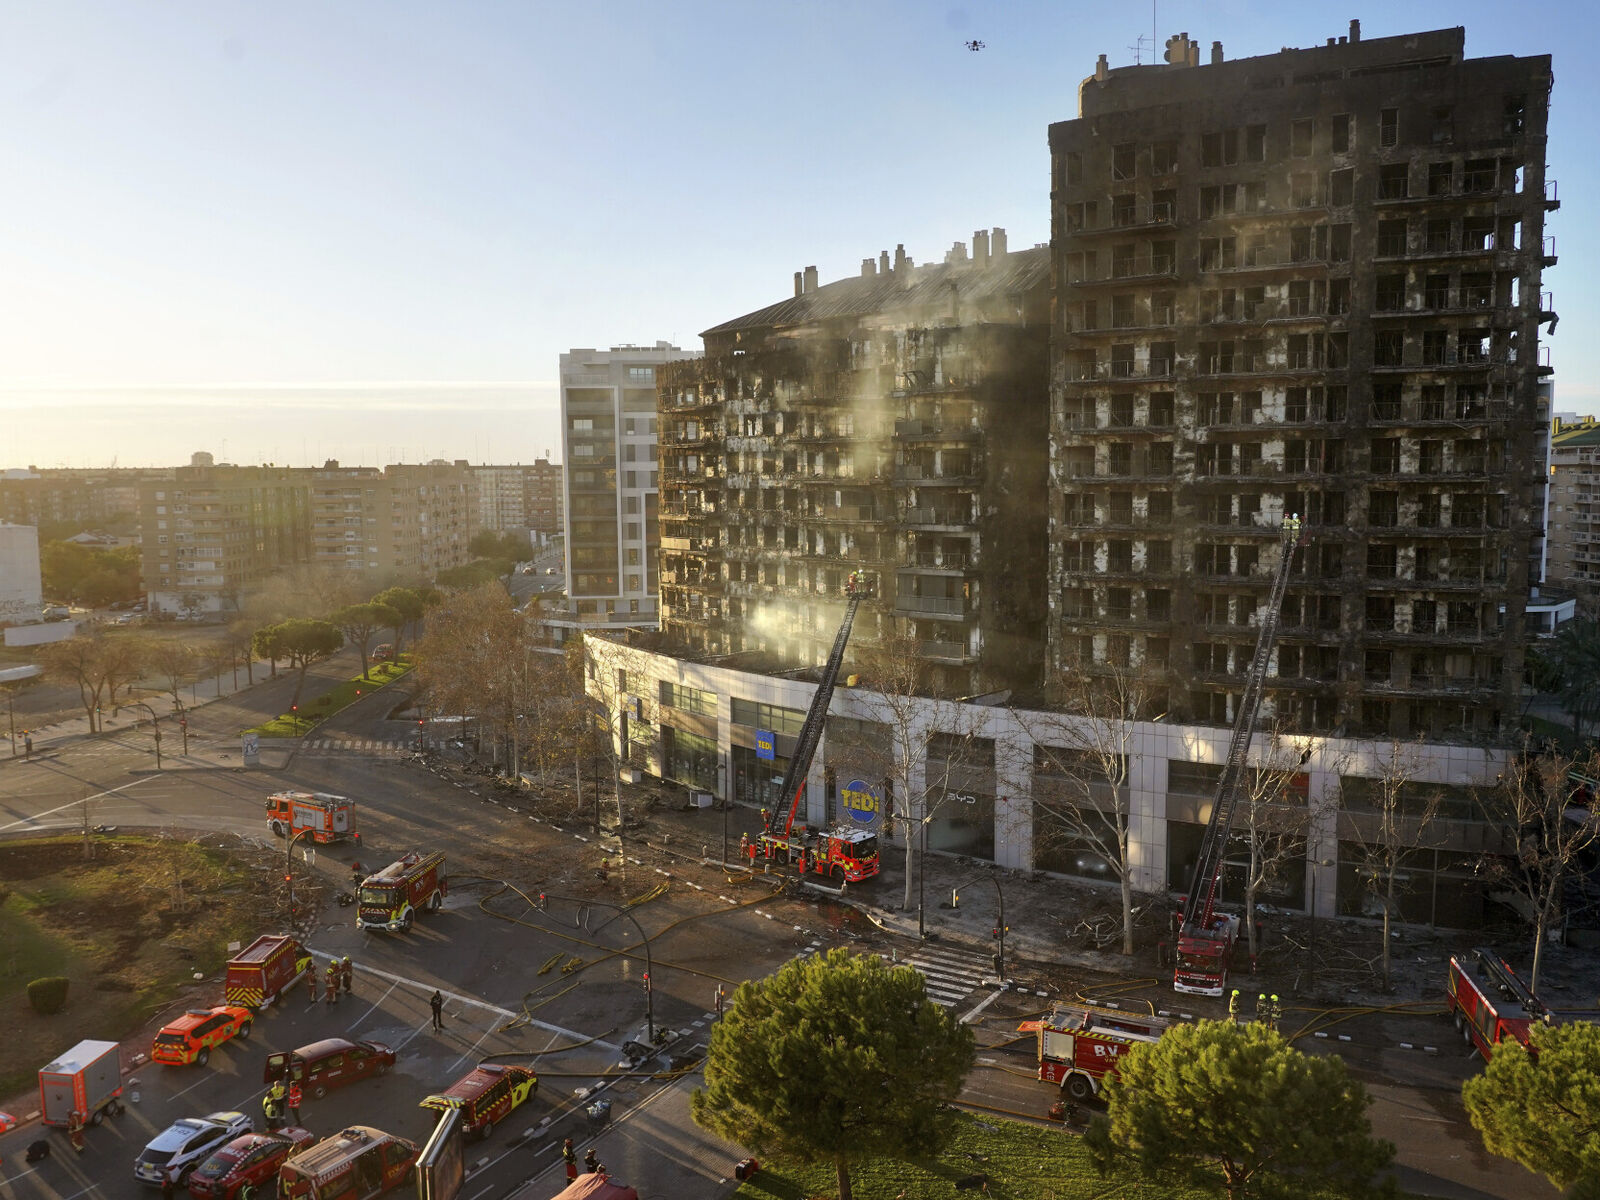 Begge leilighetsblokkene i byen Valencia øst i Spania, gikk raskt opp i flammer da det brøt ut en brann i den ene blokka torsdag 22. februar. Foto: NTB/Alberto Saiz